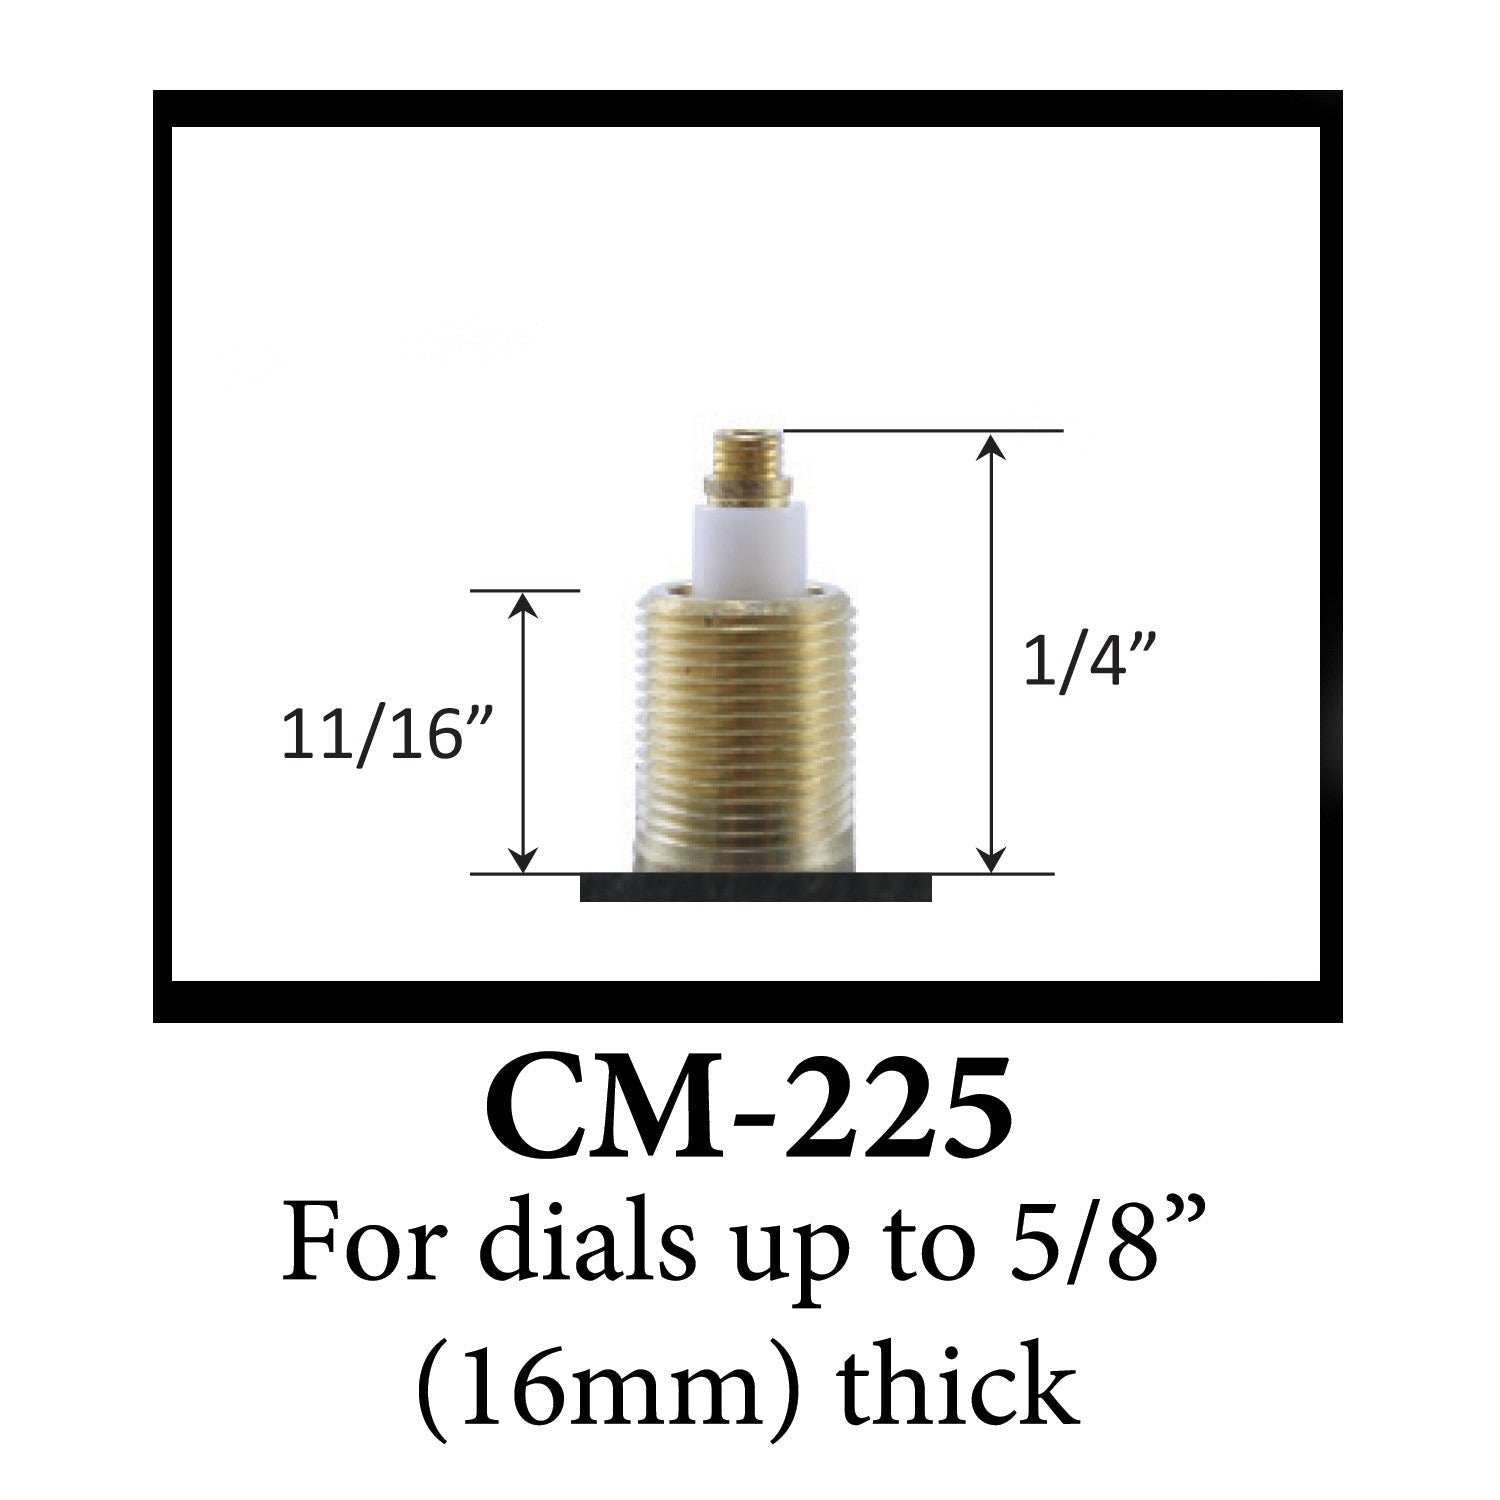 USA Made Standard C-Battery Size Pendulum Movement